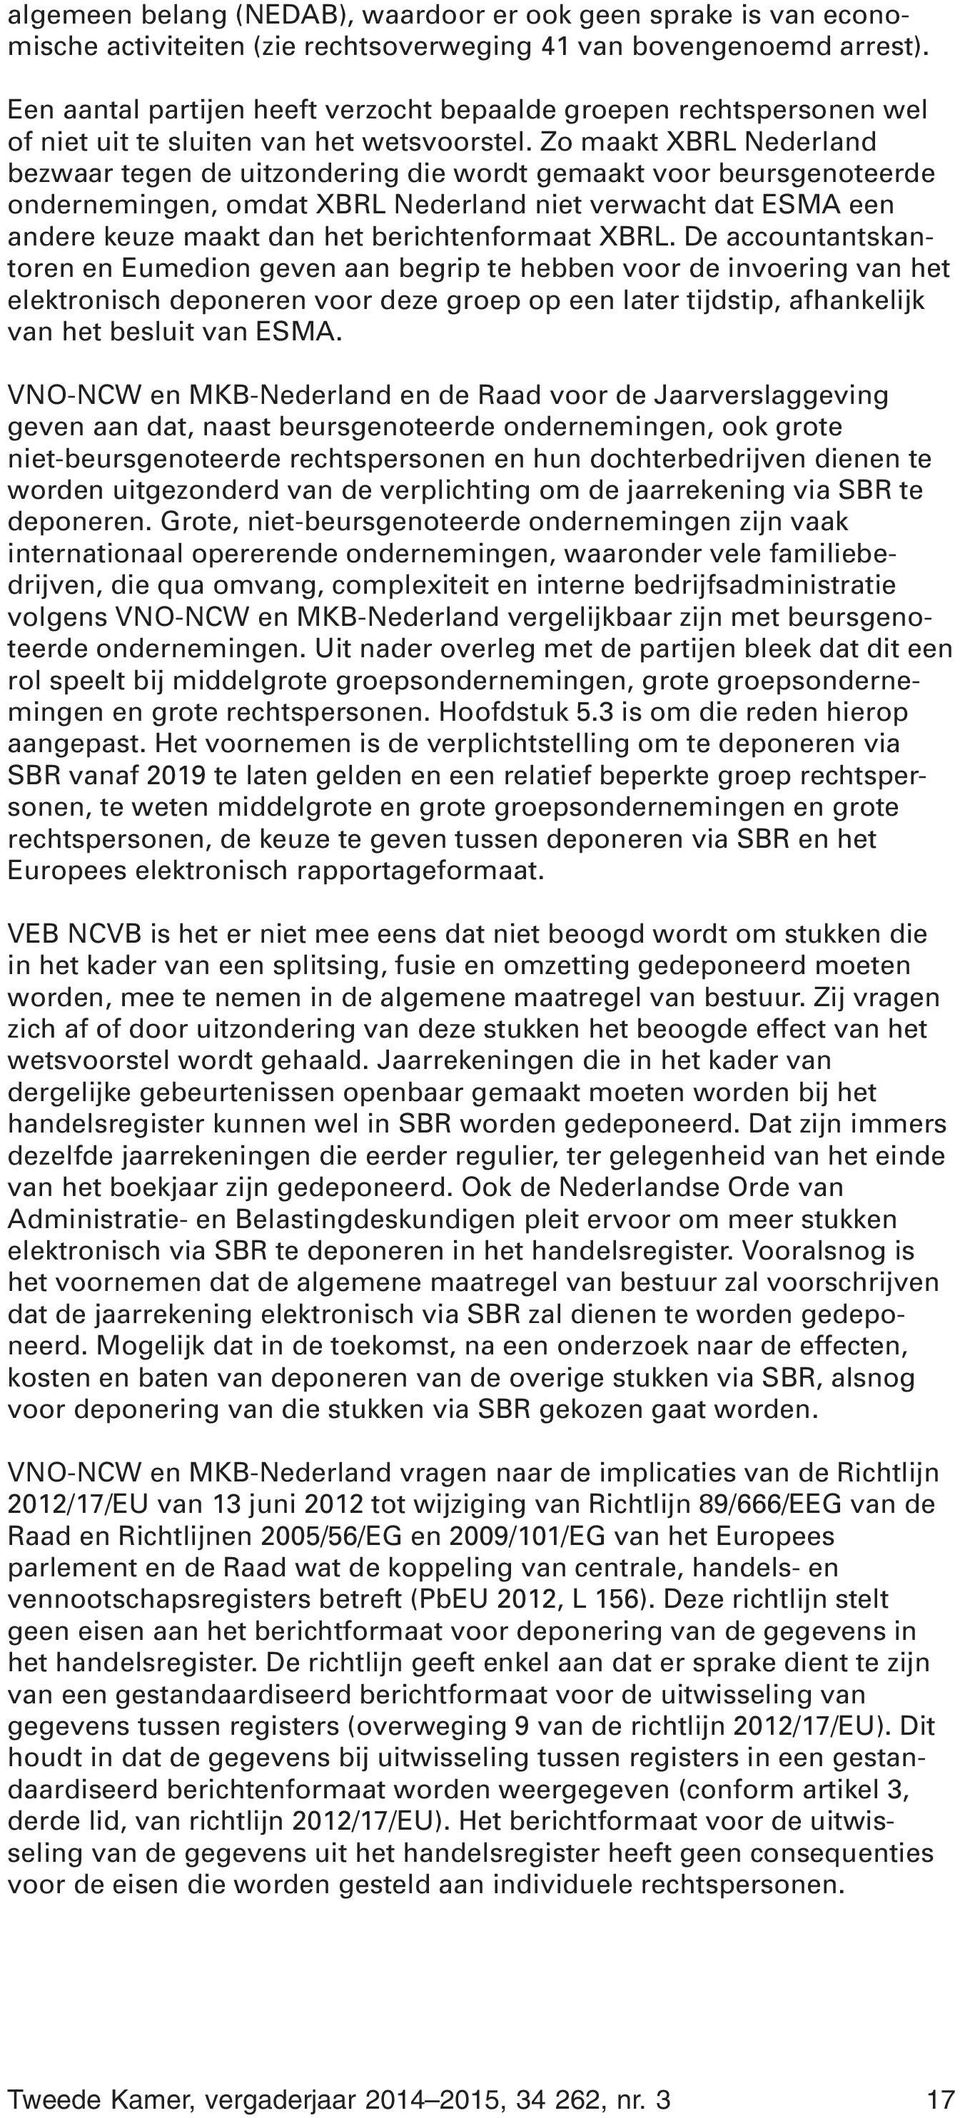 Zo maakt XBRL Nederland bezwaar tegen de uitzondering die wordt gemaakt voor beursgenoteerde ondernemingen, omdat XBRL Nederland niet verwacht dat ESMA een andere keuze maakt dan het berichtenformaat